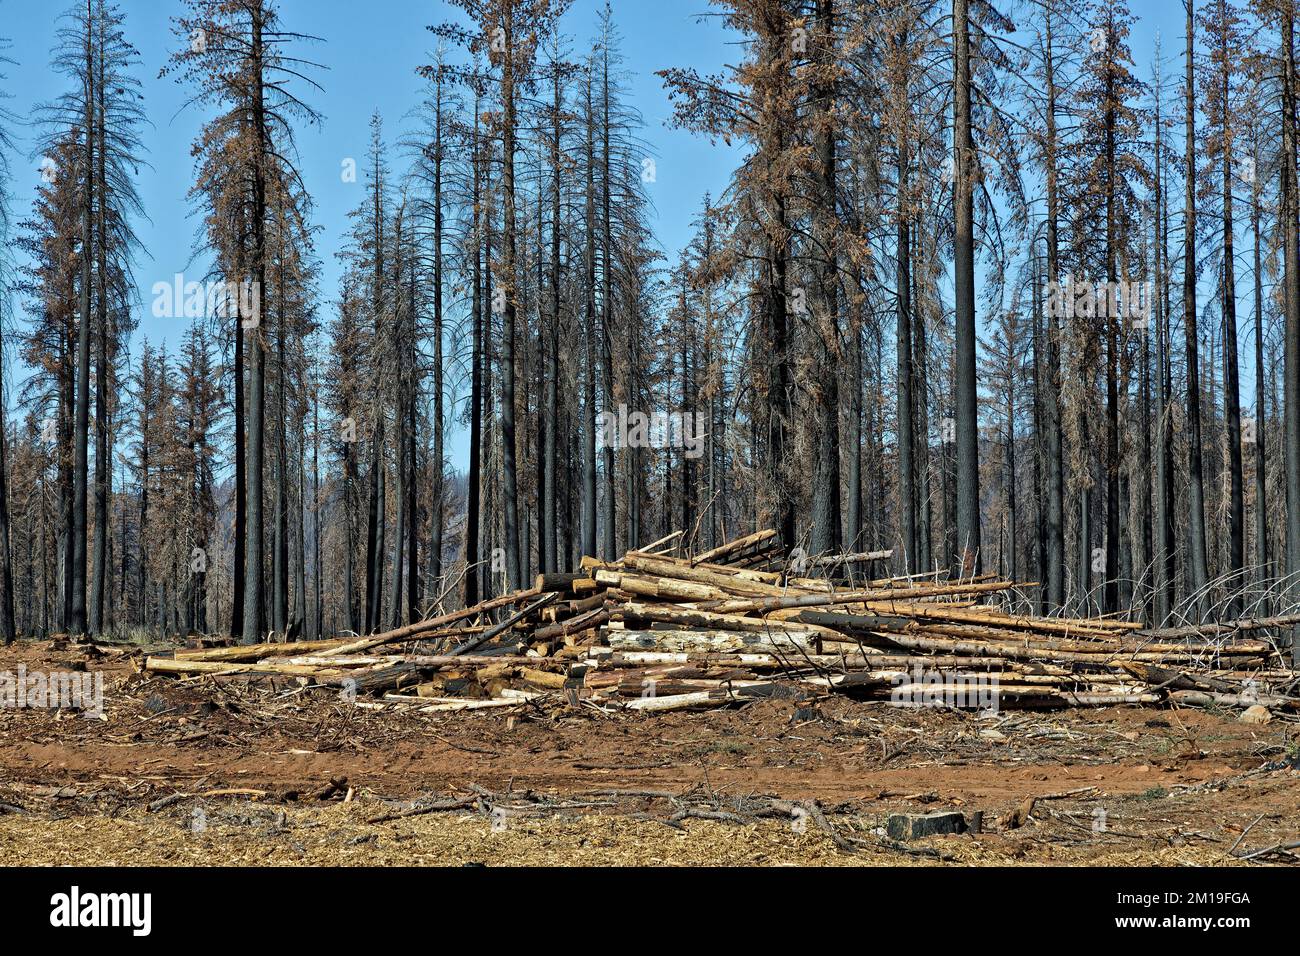 Recupero di alberi bruciati, derivanti da incendi boschivi, che hanno provocato giovani Douglas Fir, Ponderosa & Sugar Pine, autostrada 36, California. Foto Stock